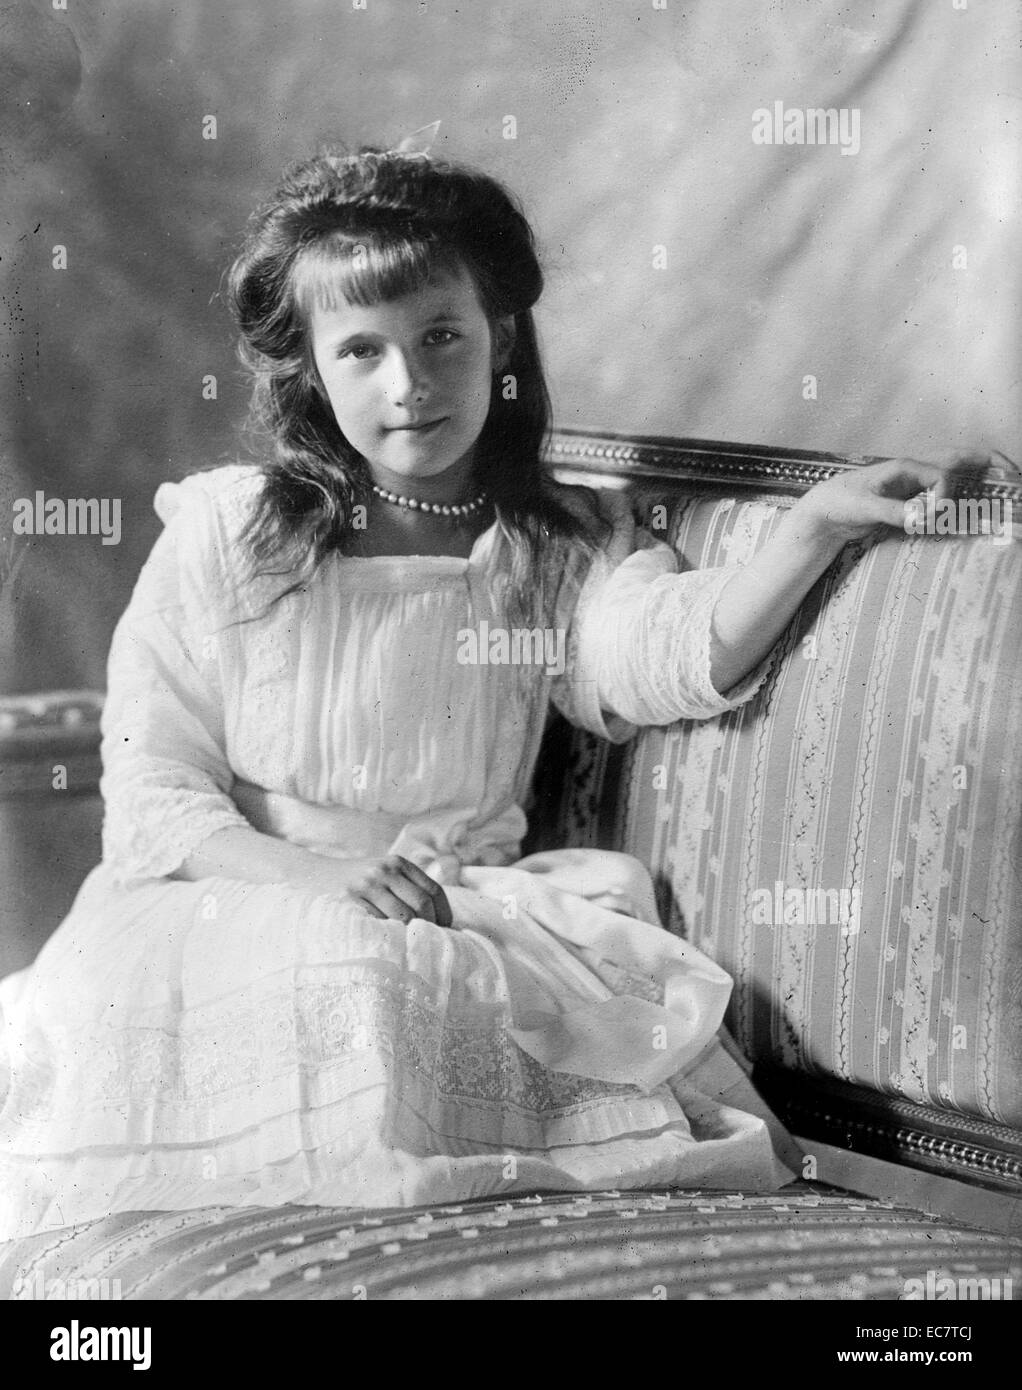 La grande-duchesse Anastasia de Russie, 1901 - Juillet 17, 1918. Elle était la plus jeune fille du tsar Nicolas II, le dernier Tsar de Russie. Banque D'Images